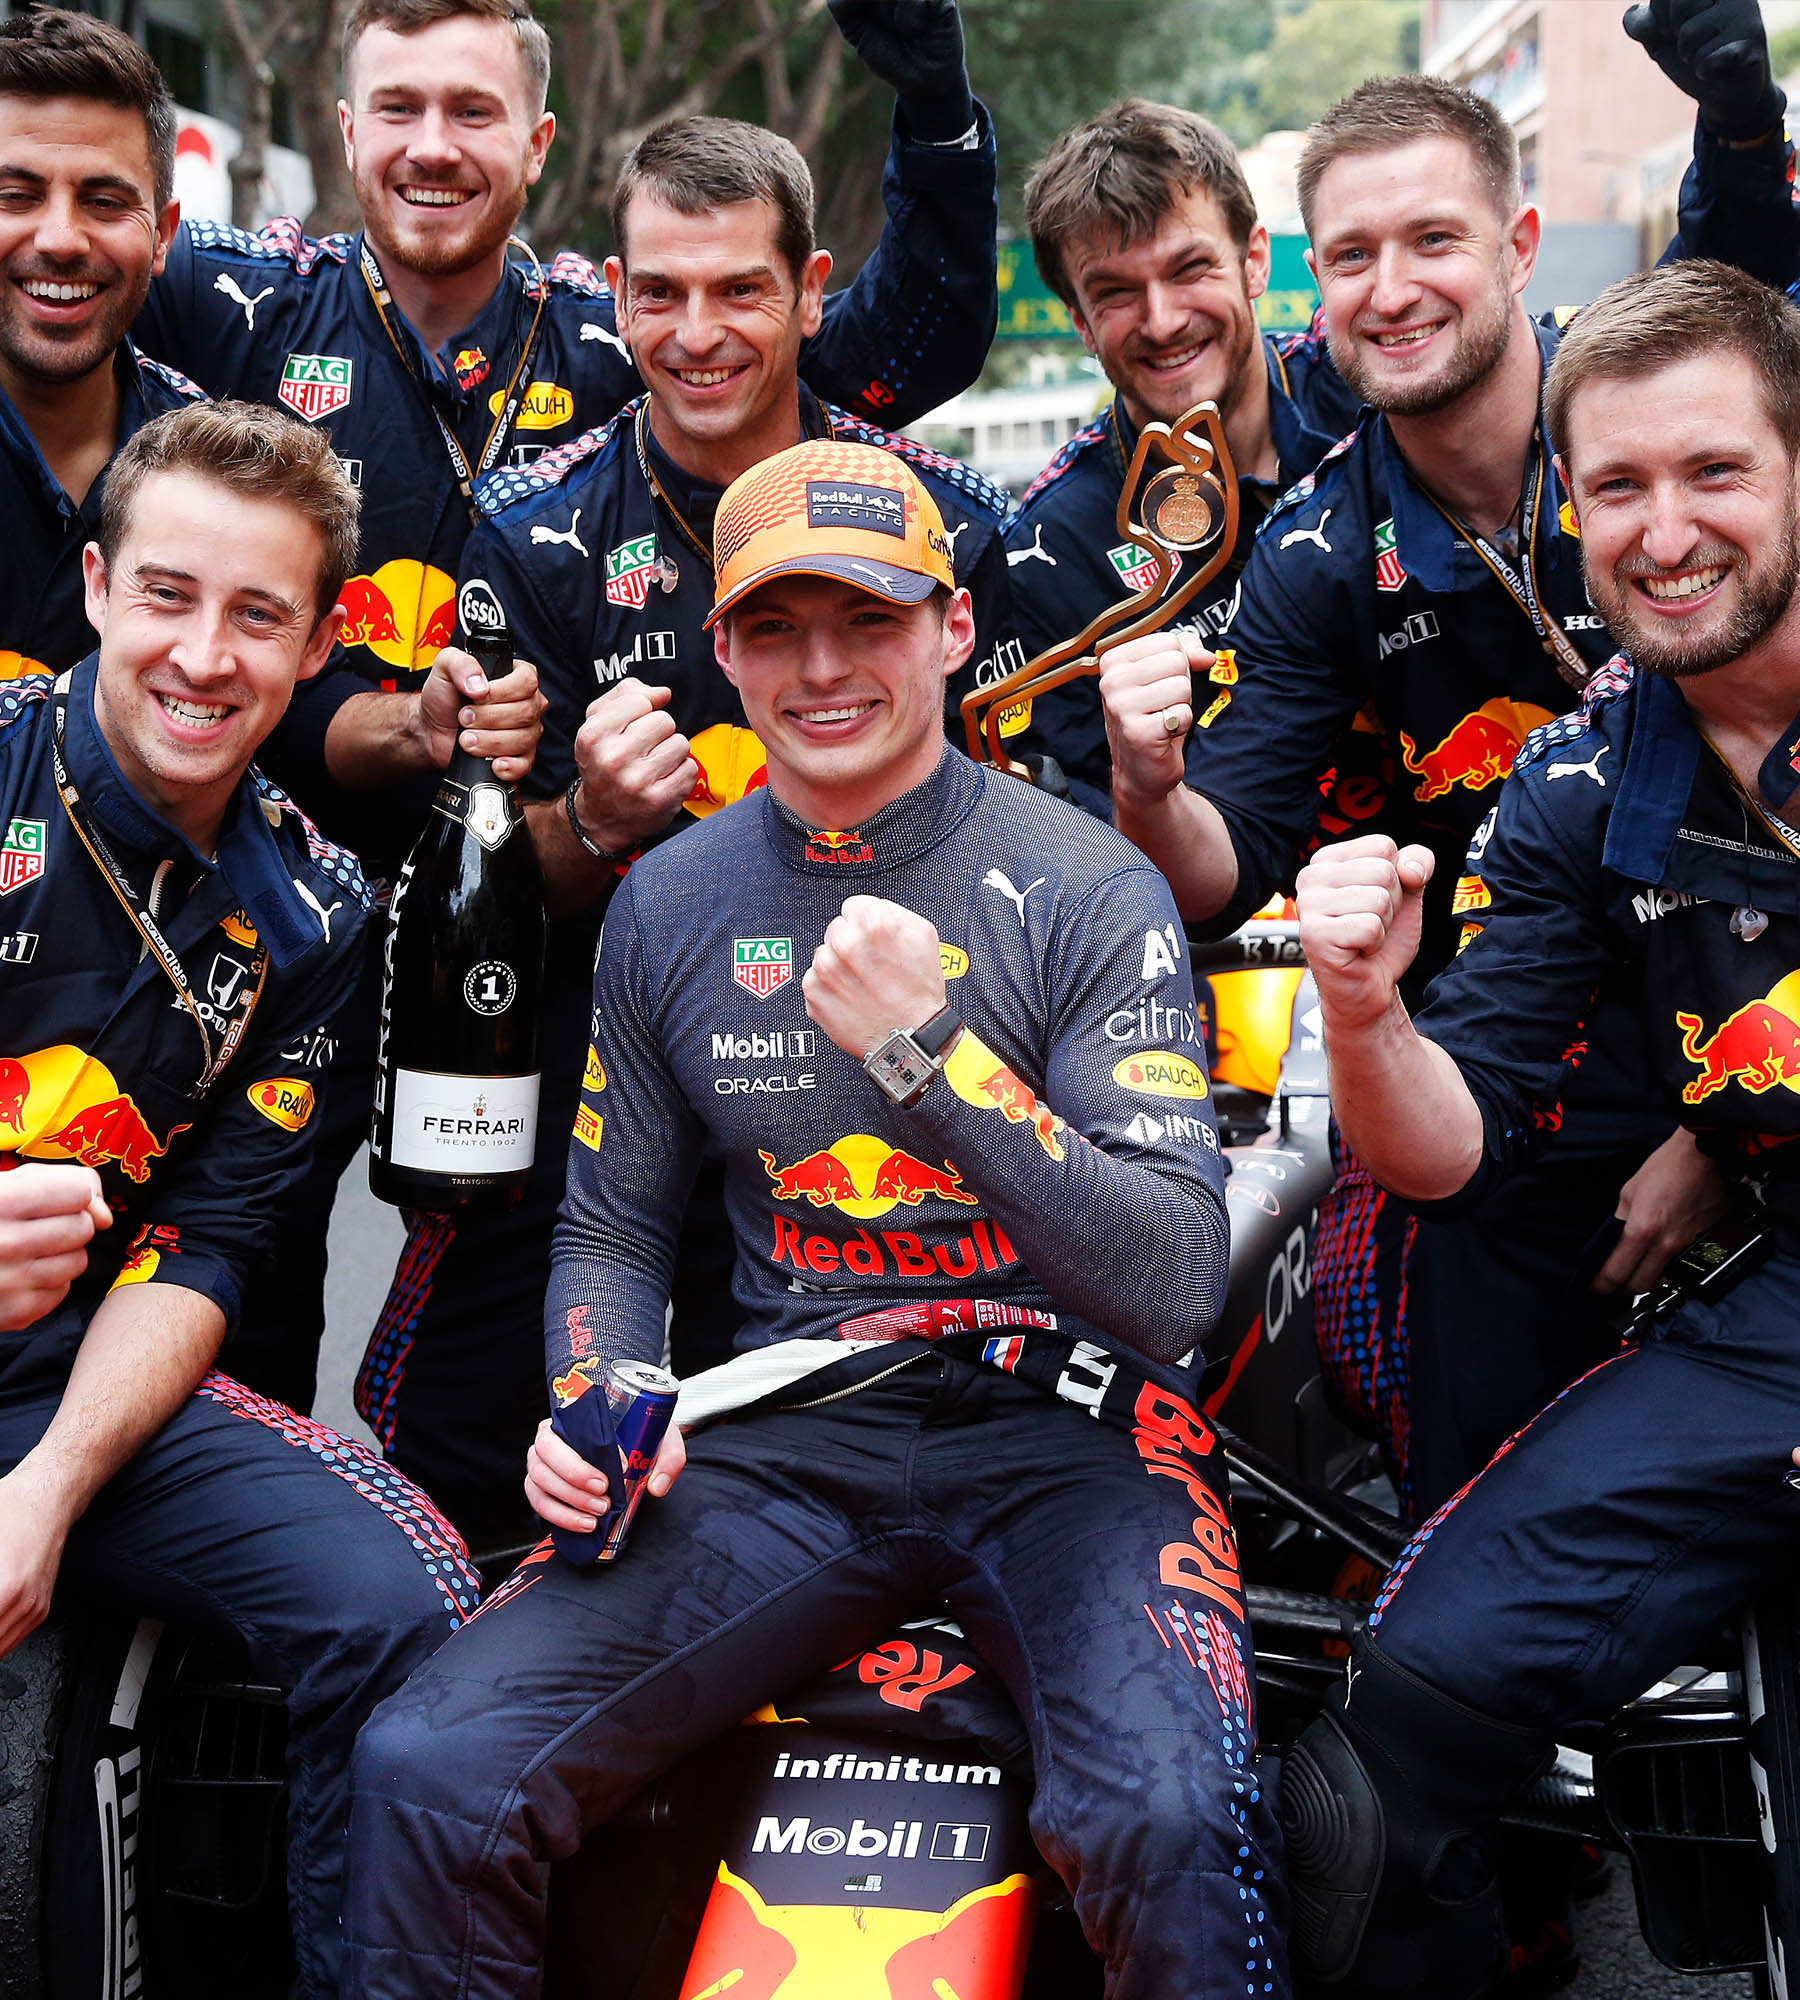 Red Bull Racing - Equipo de Fórmula 1 - TAG Heuer®